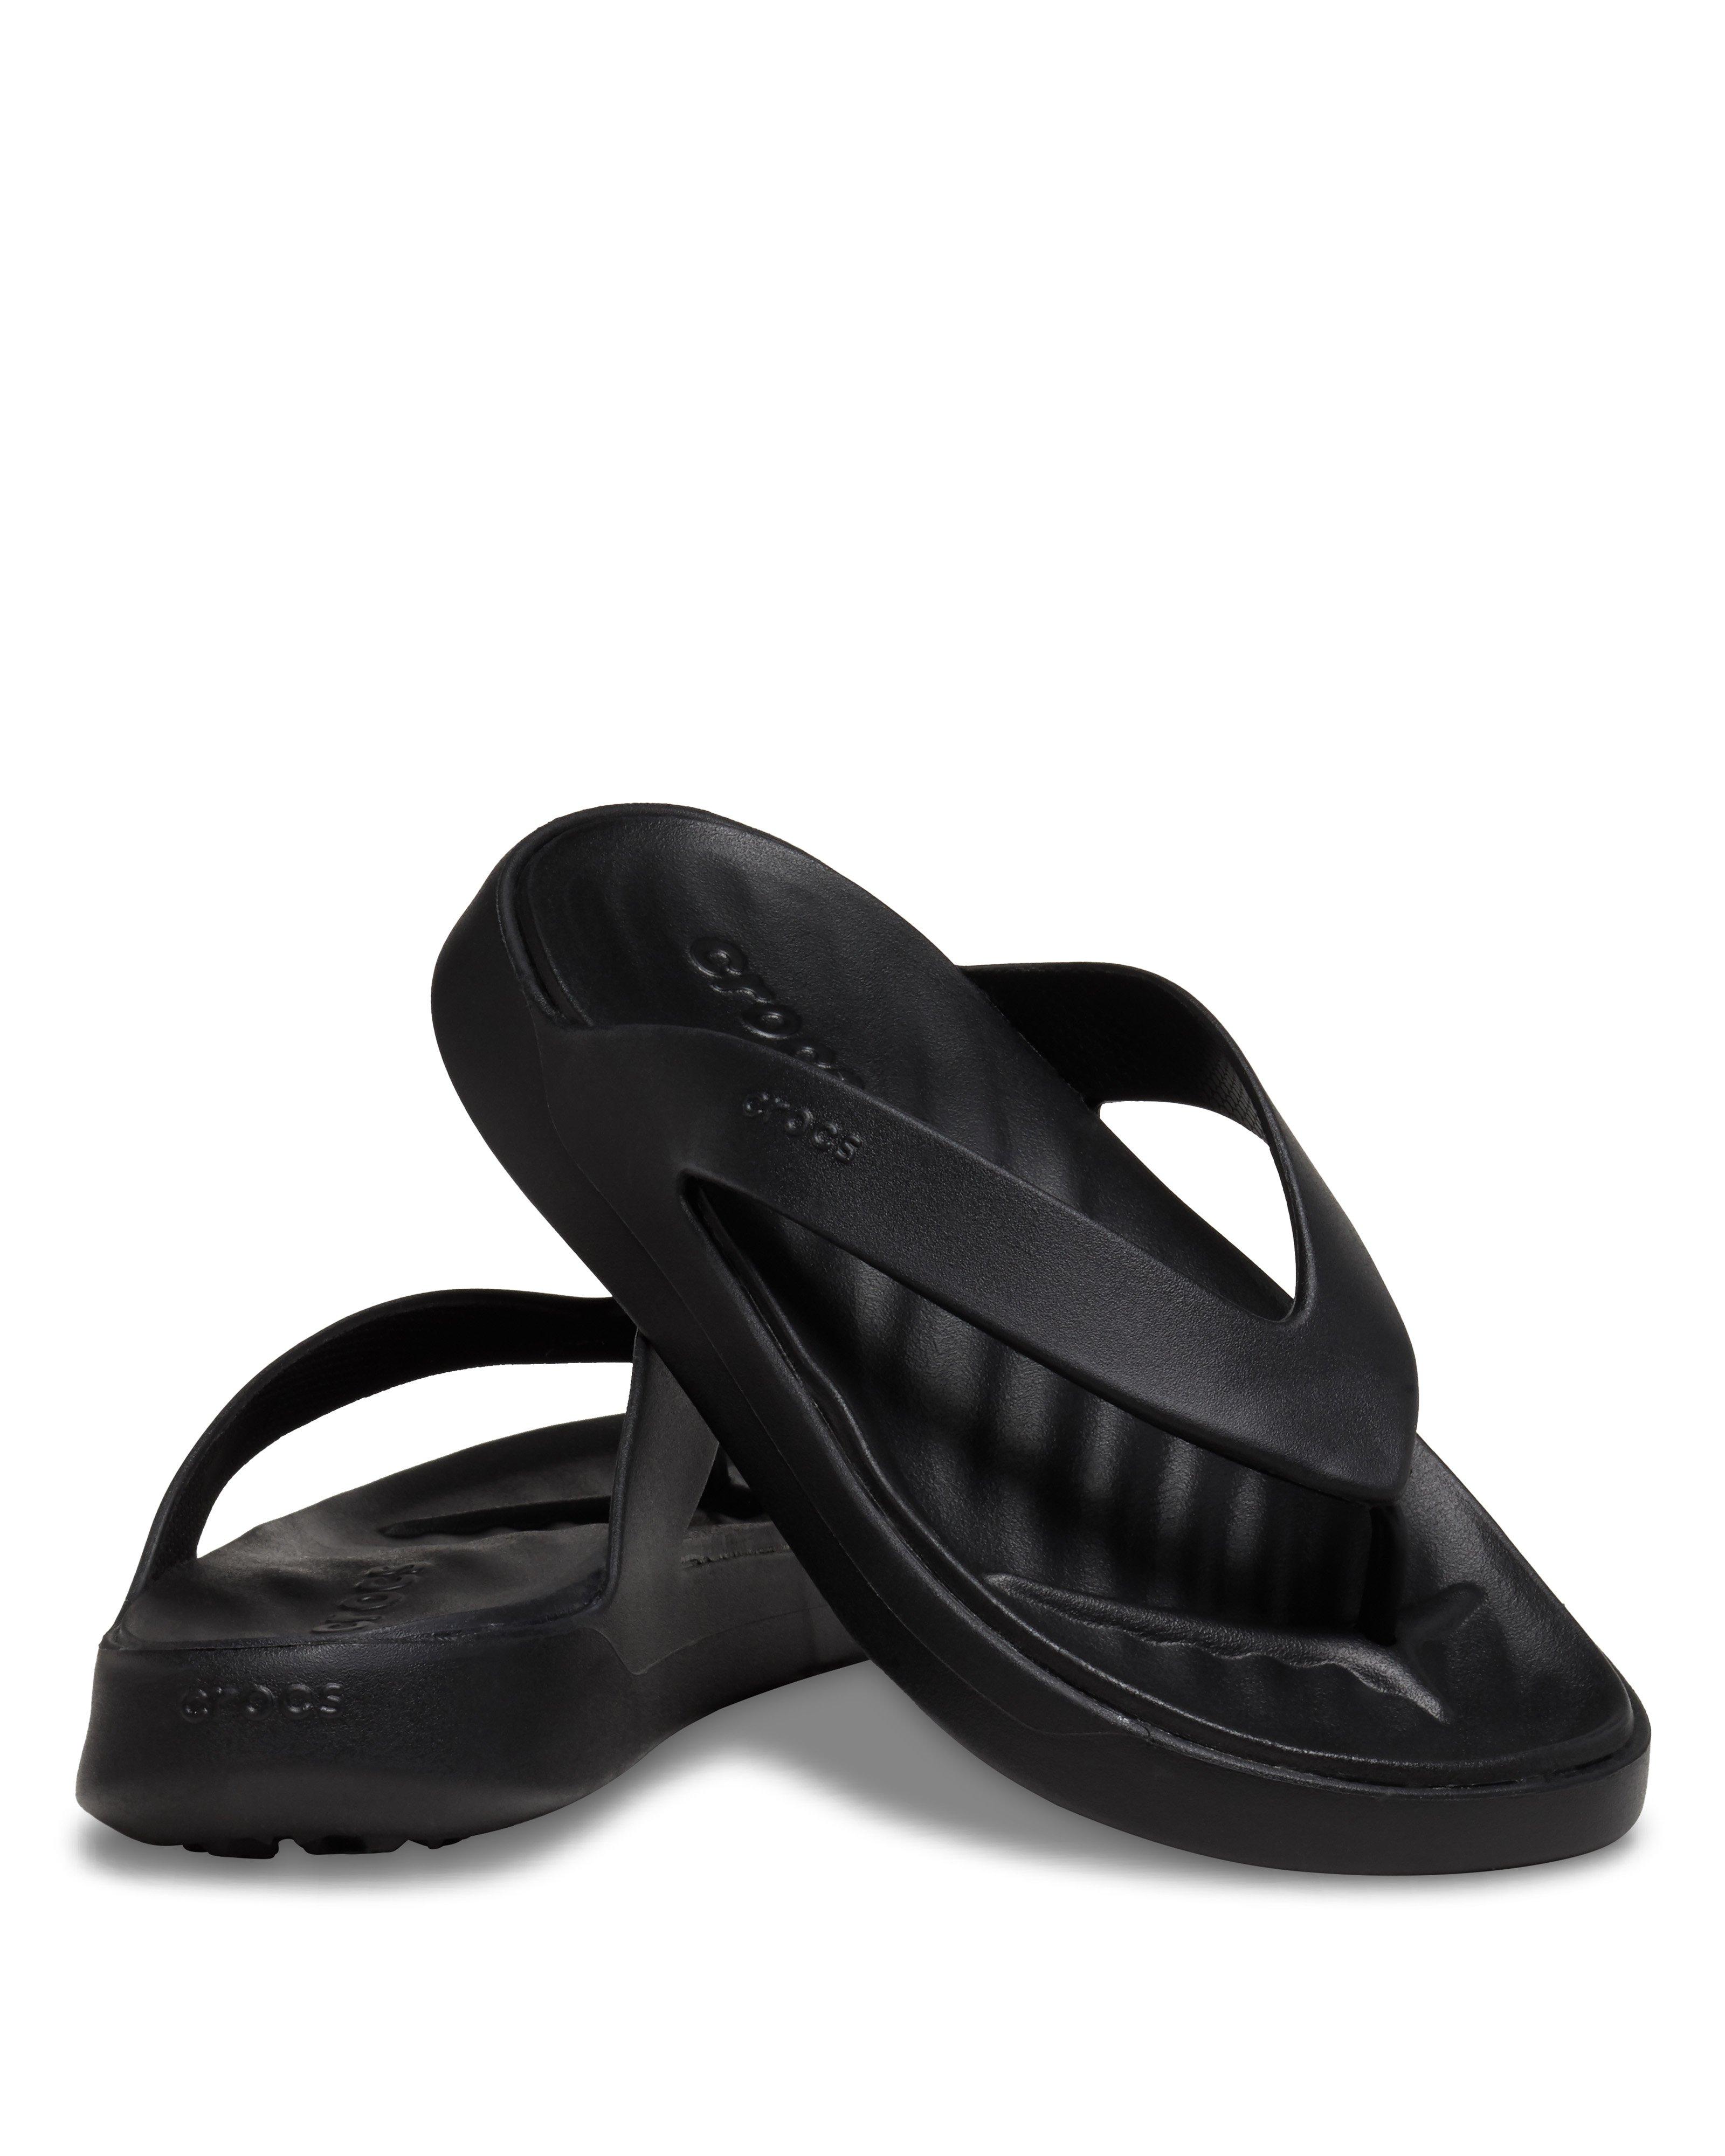 Crocs Women’s Getaway Flip Flops -  Black